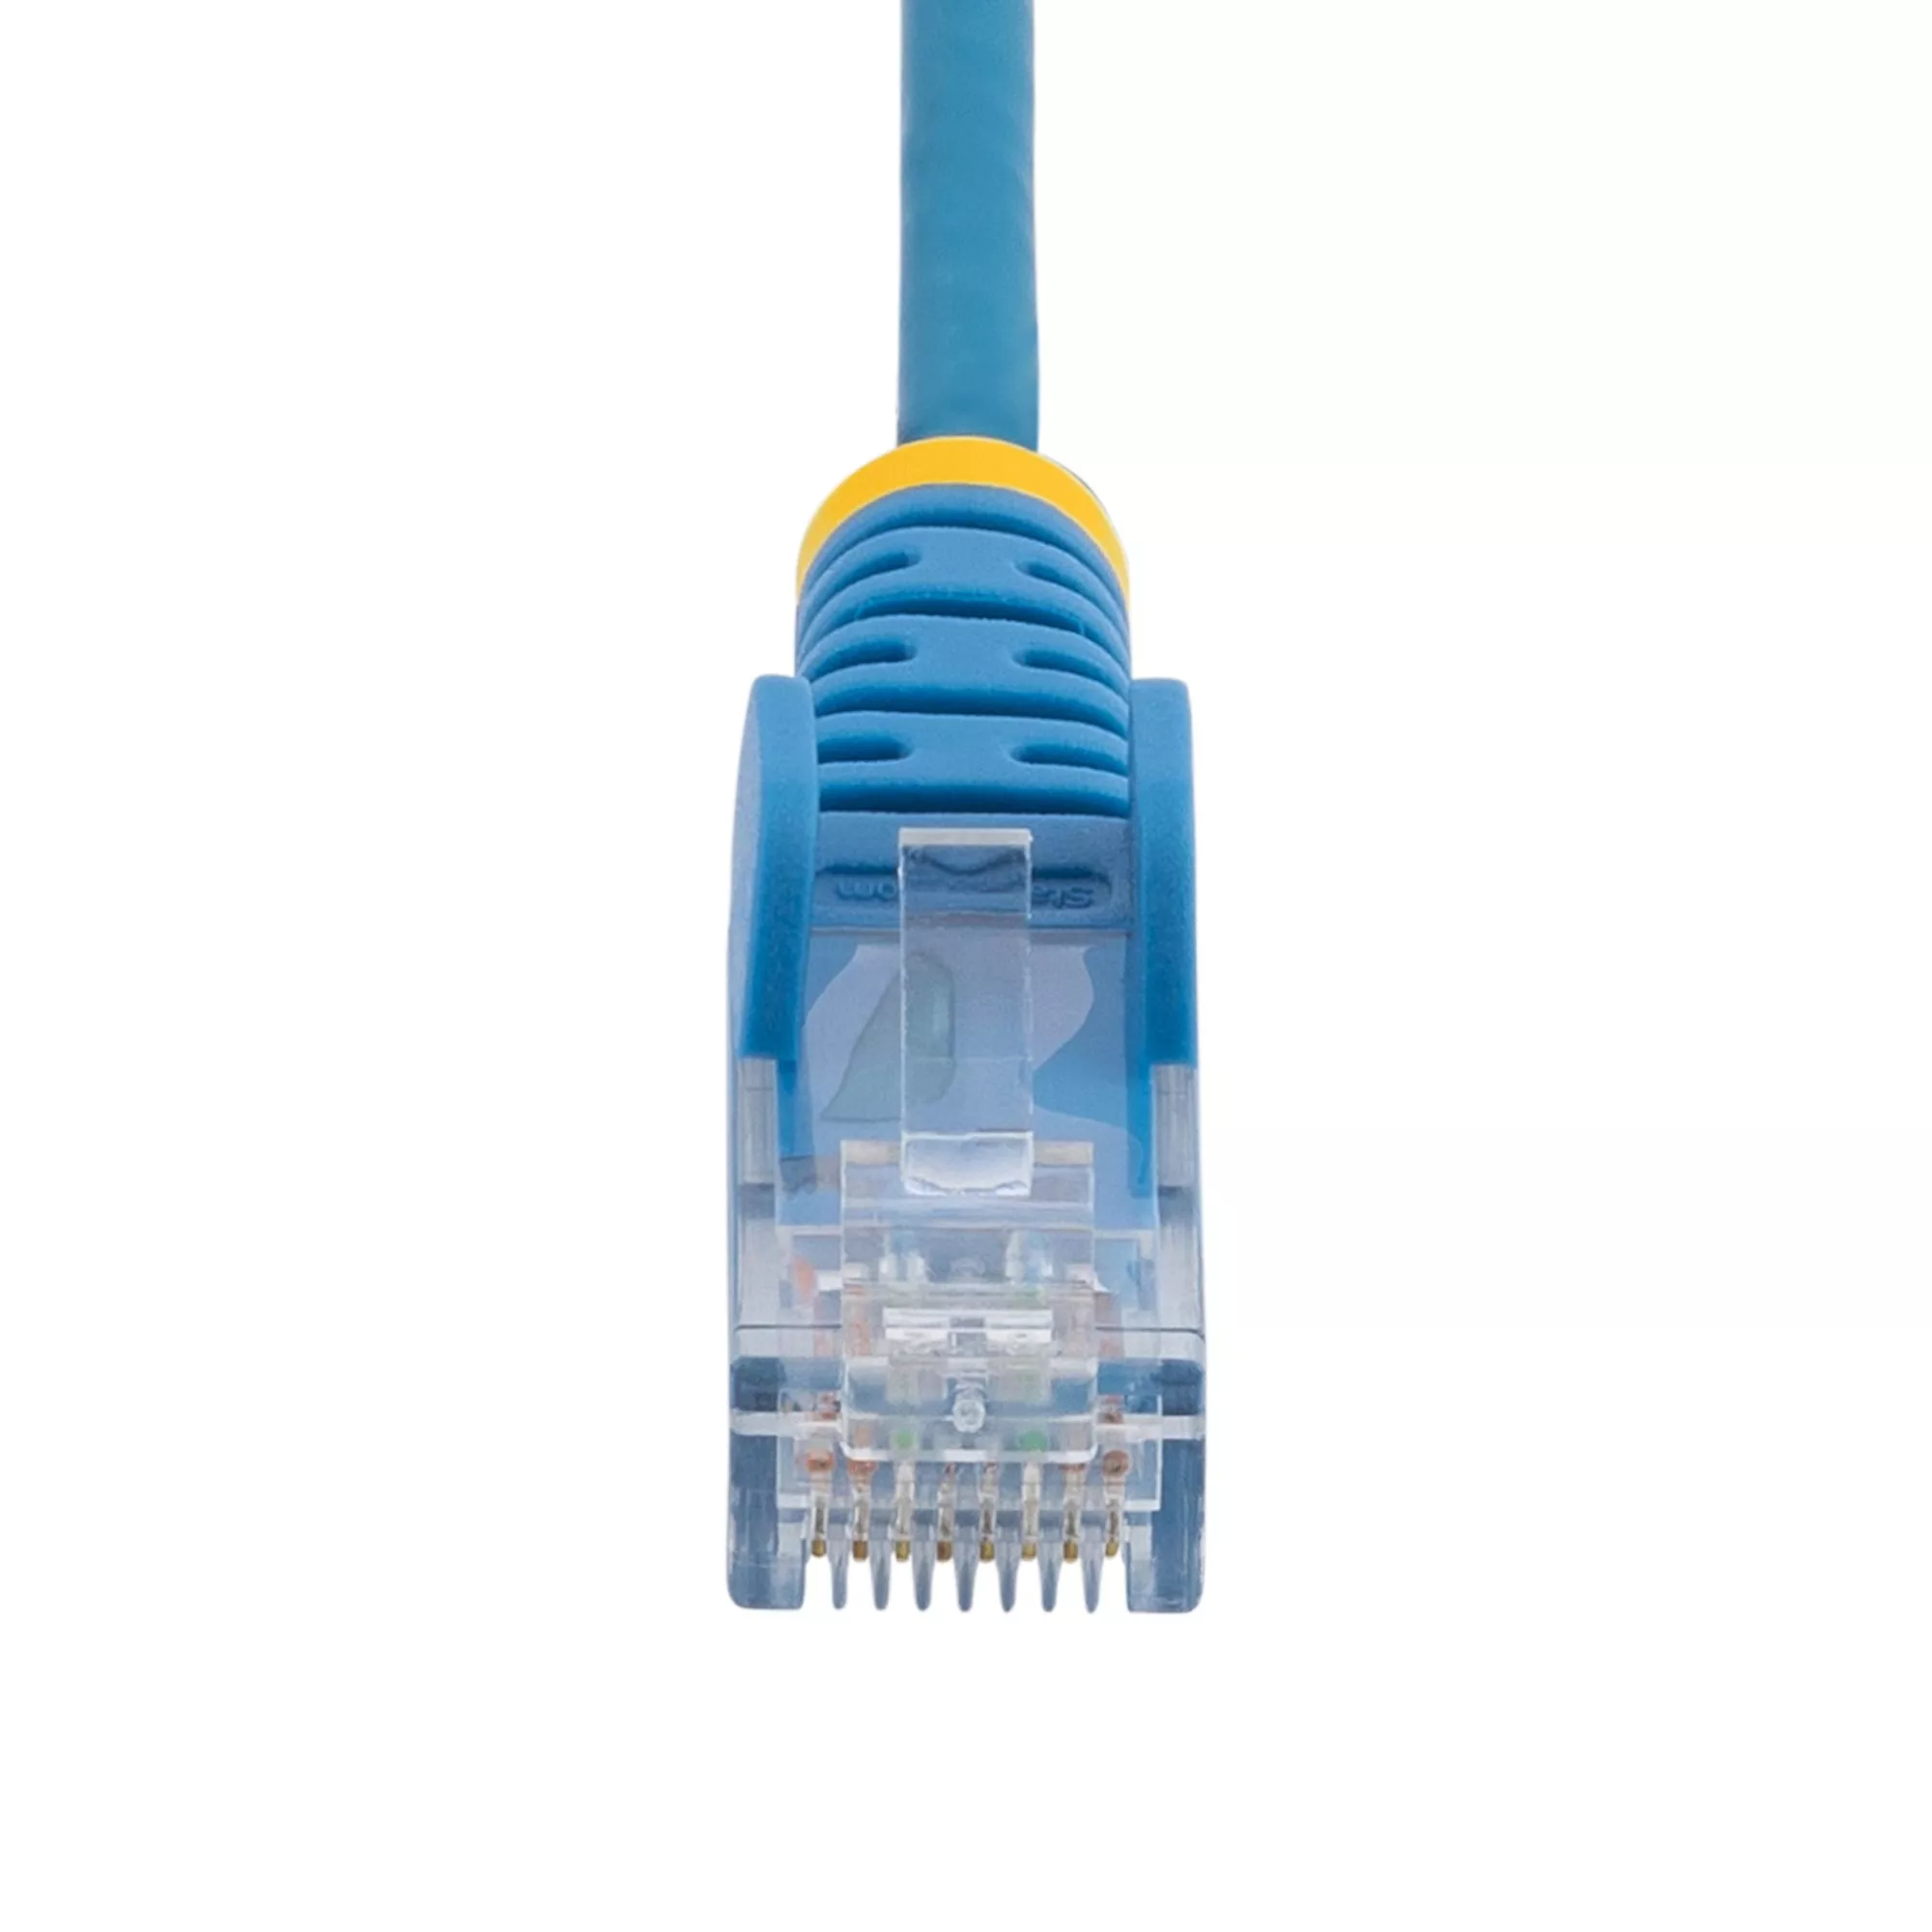 Vente StarTech.com Câble réseau Ethernet RJ45 Cat6 de 1 StarTech.com au meilleur prix - visuel 4